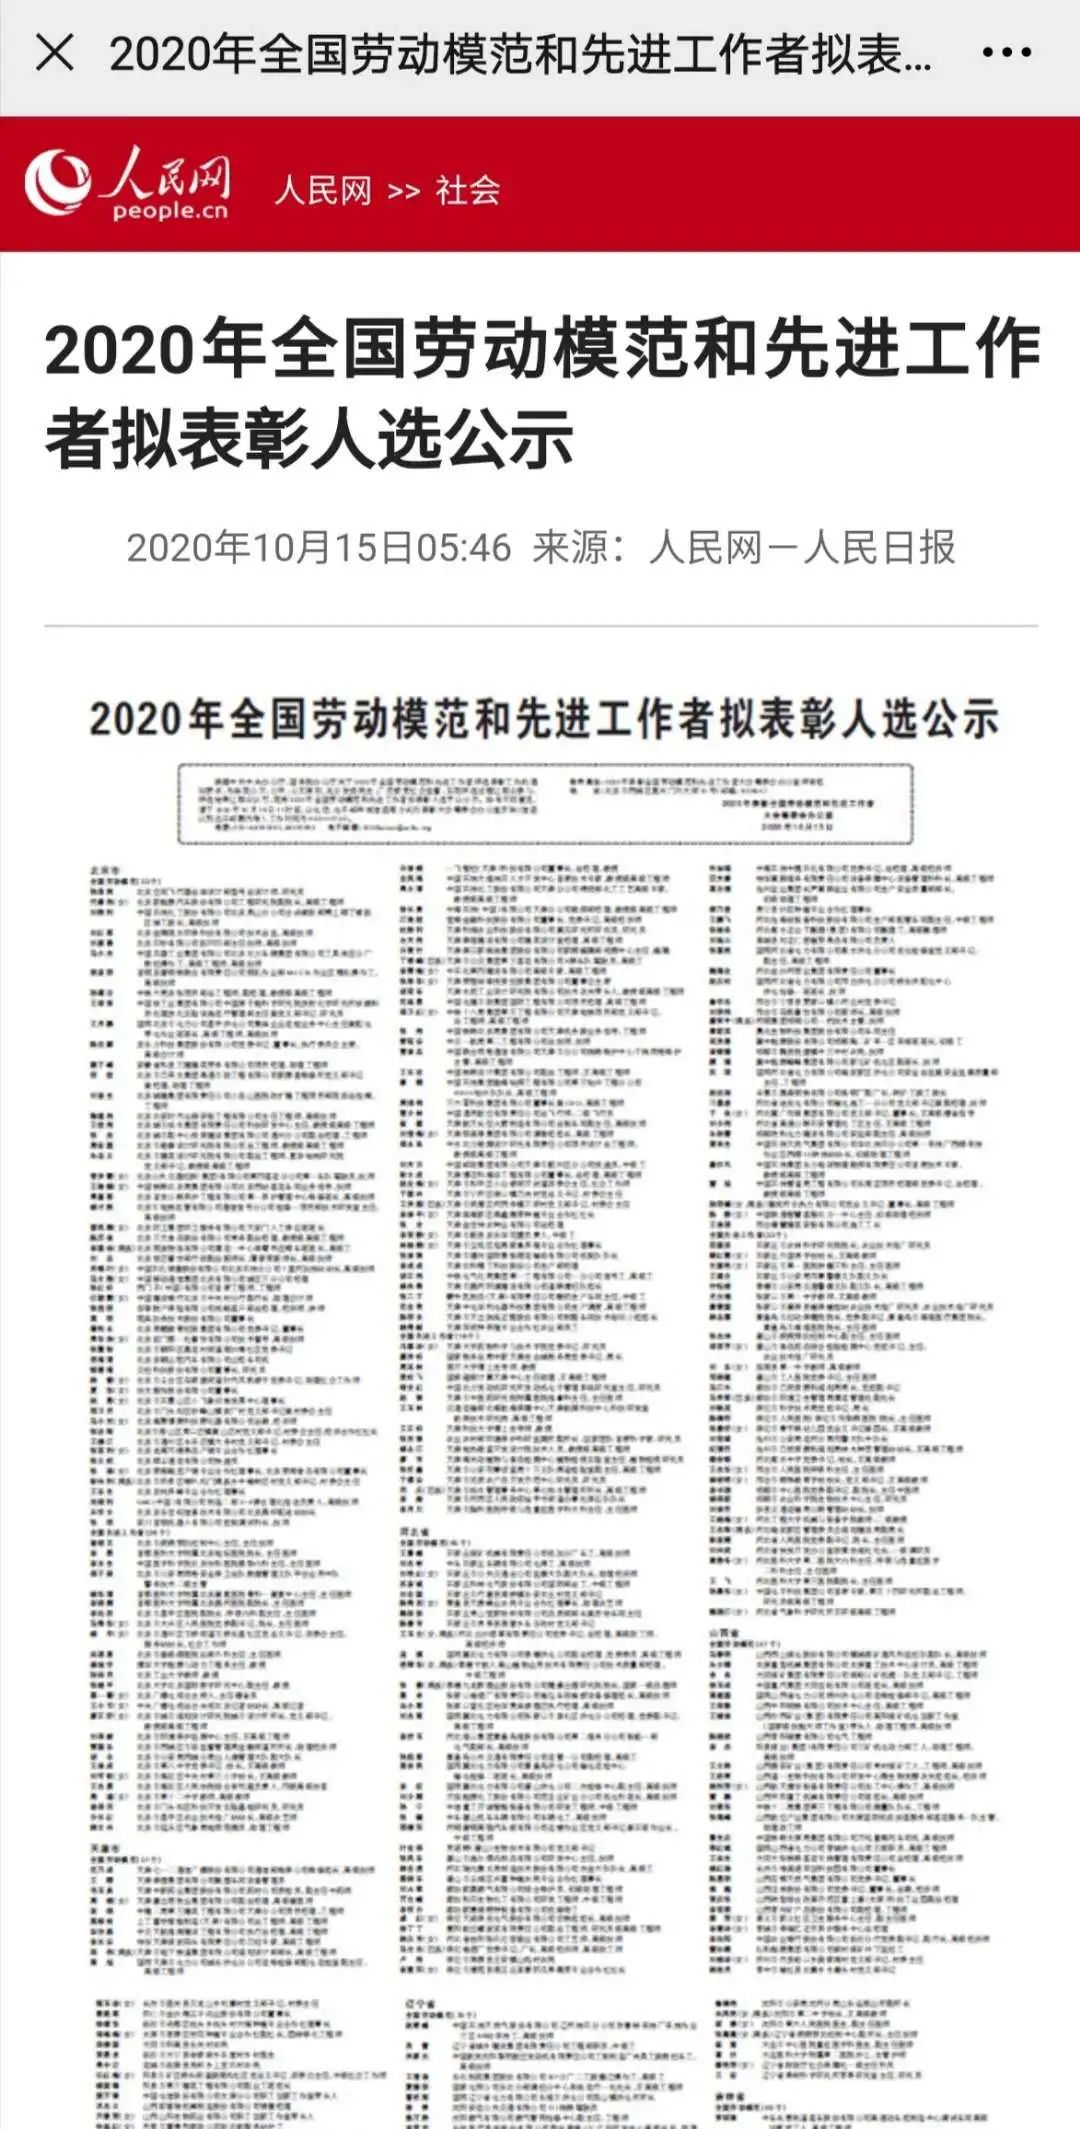 2020年全国劳动模范和先进工作者拟表彰人选公示上海监狱民警周盟入选